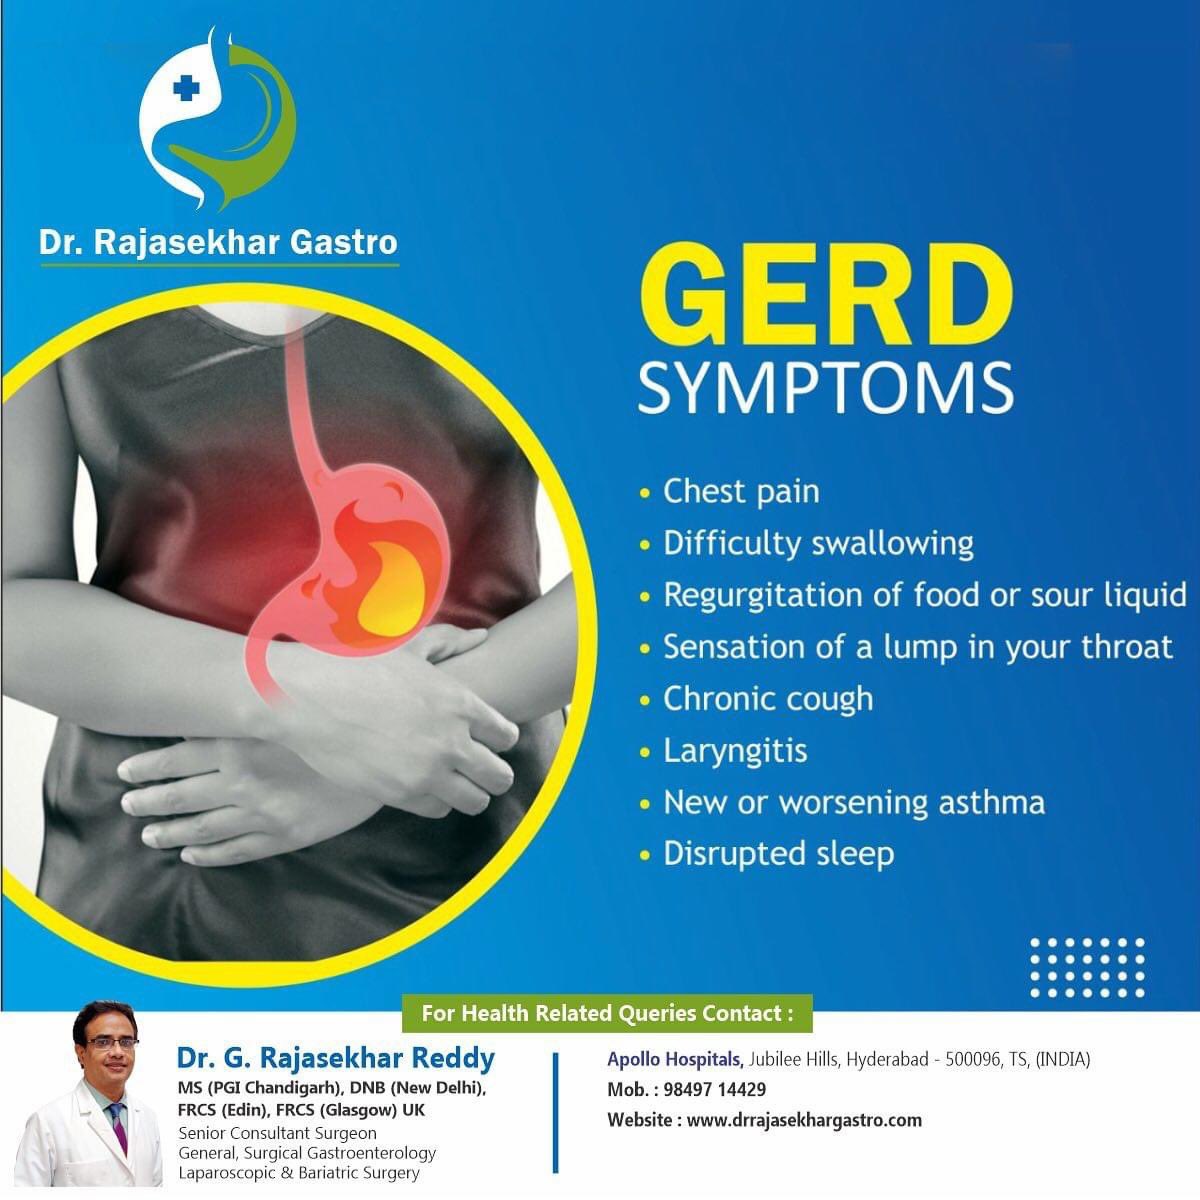 GERD SYMPTOMS

Best Gastroenterologist in Hyderabad

📞Mobile: 98497 14429

#laparoscopicsurgery #gastrointestinal #gastronomy #gastronomie #gerd #gastroesophagealrefluxdisease #gastropost #gastrosurg #gallbladder #gallbladdersurgery #gallbladderproblems #herniasurgery #hernia